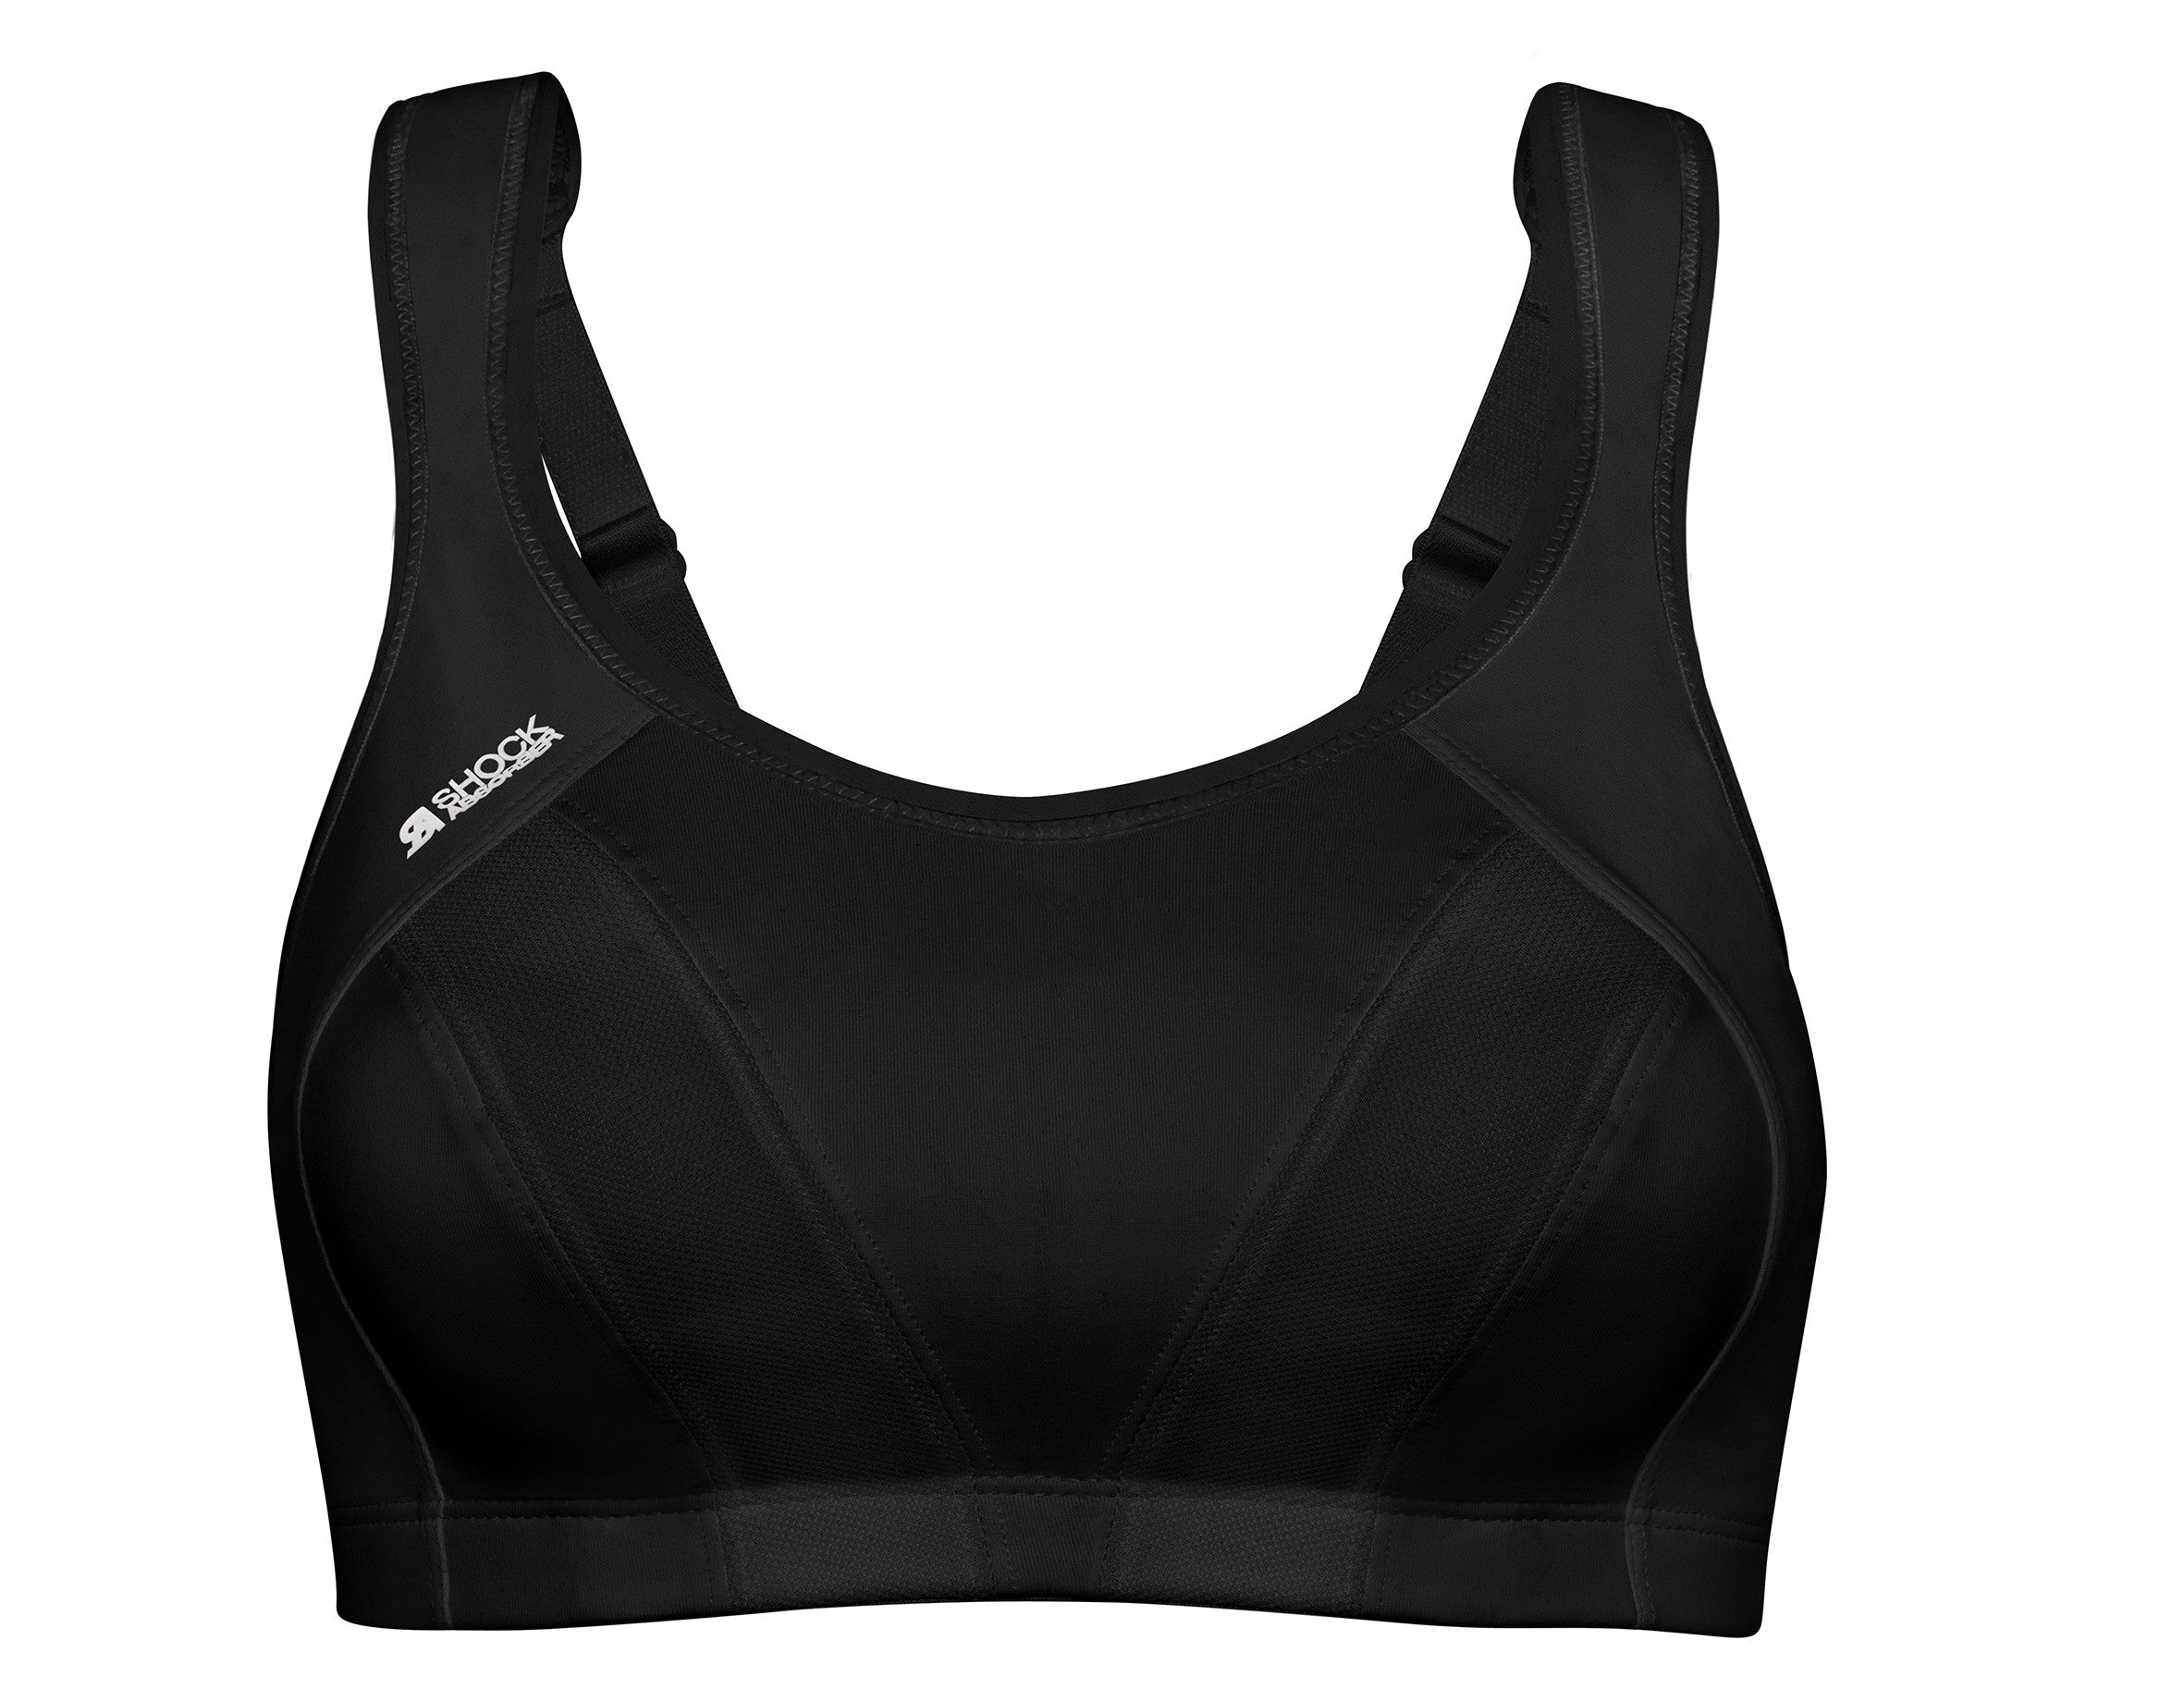 Active Multi Sports sports bra in black Shock Absorber